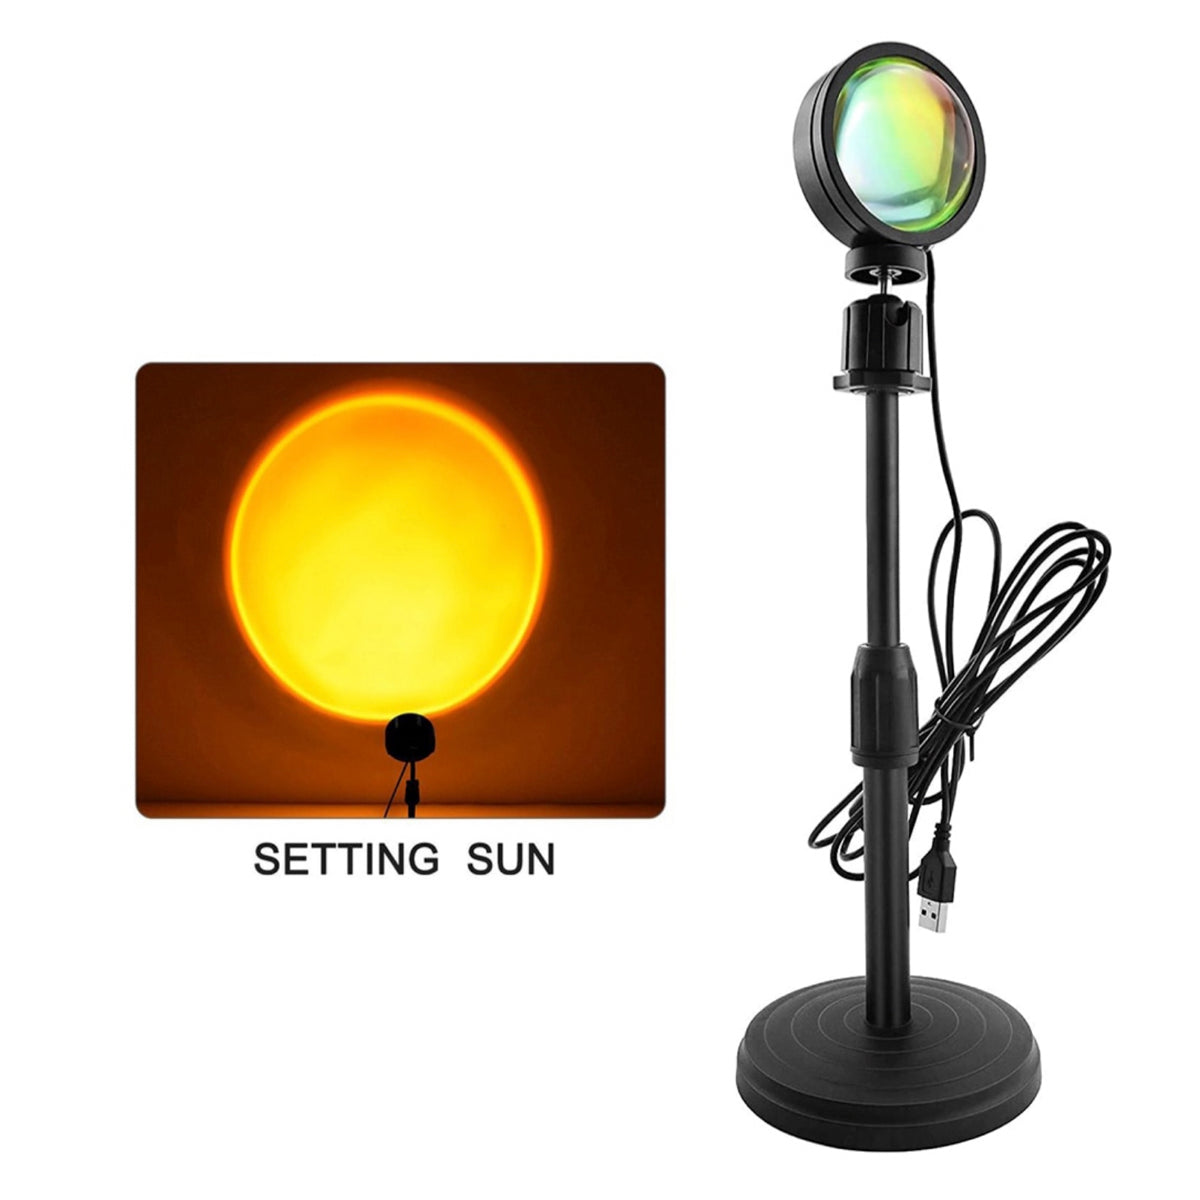 Lampa de veghe cu proiectie Setting Sun, awwaline®, reglabila pe inaltime, rotatie 360 grade, lumina ambientala pentru atmosfera romantica